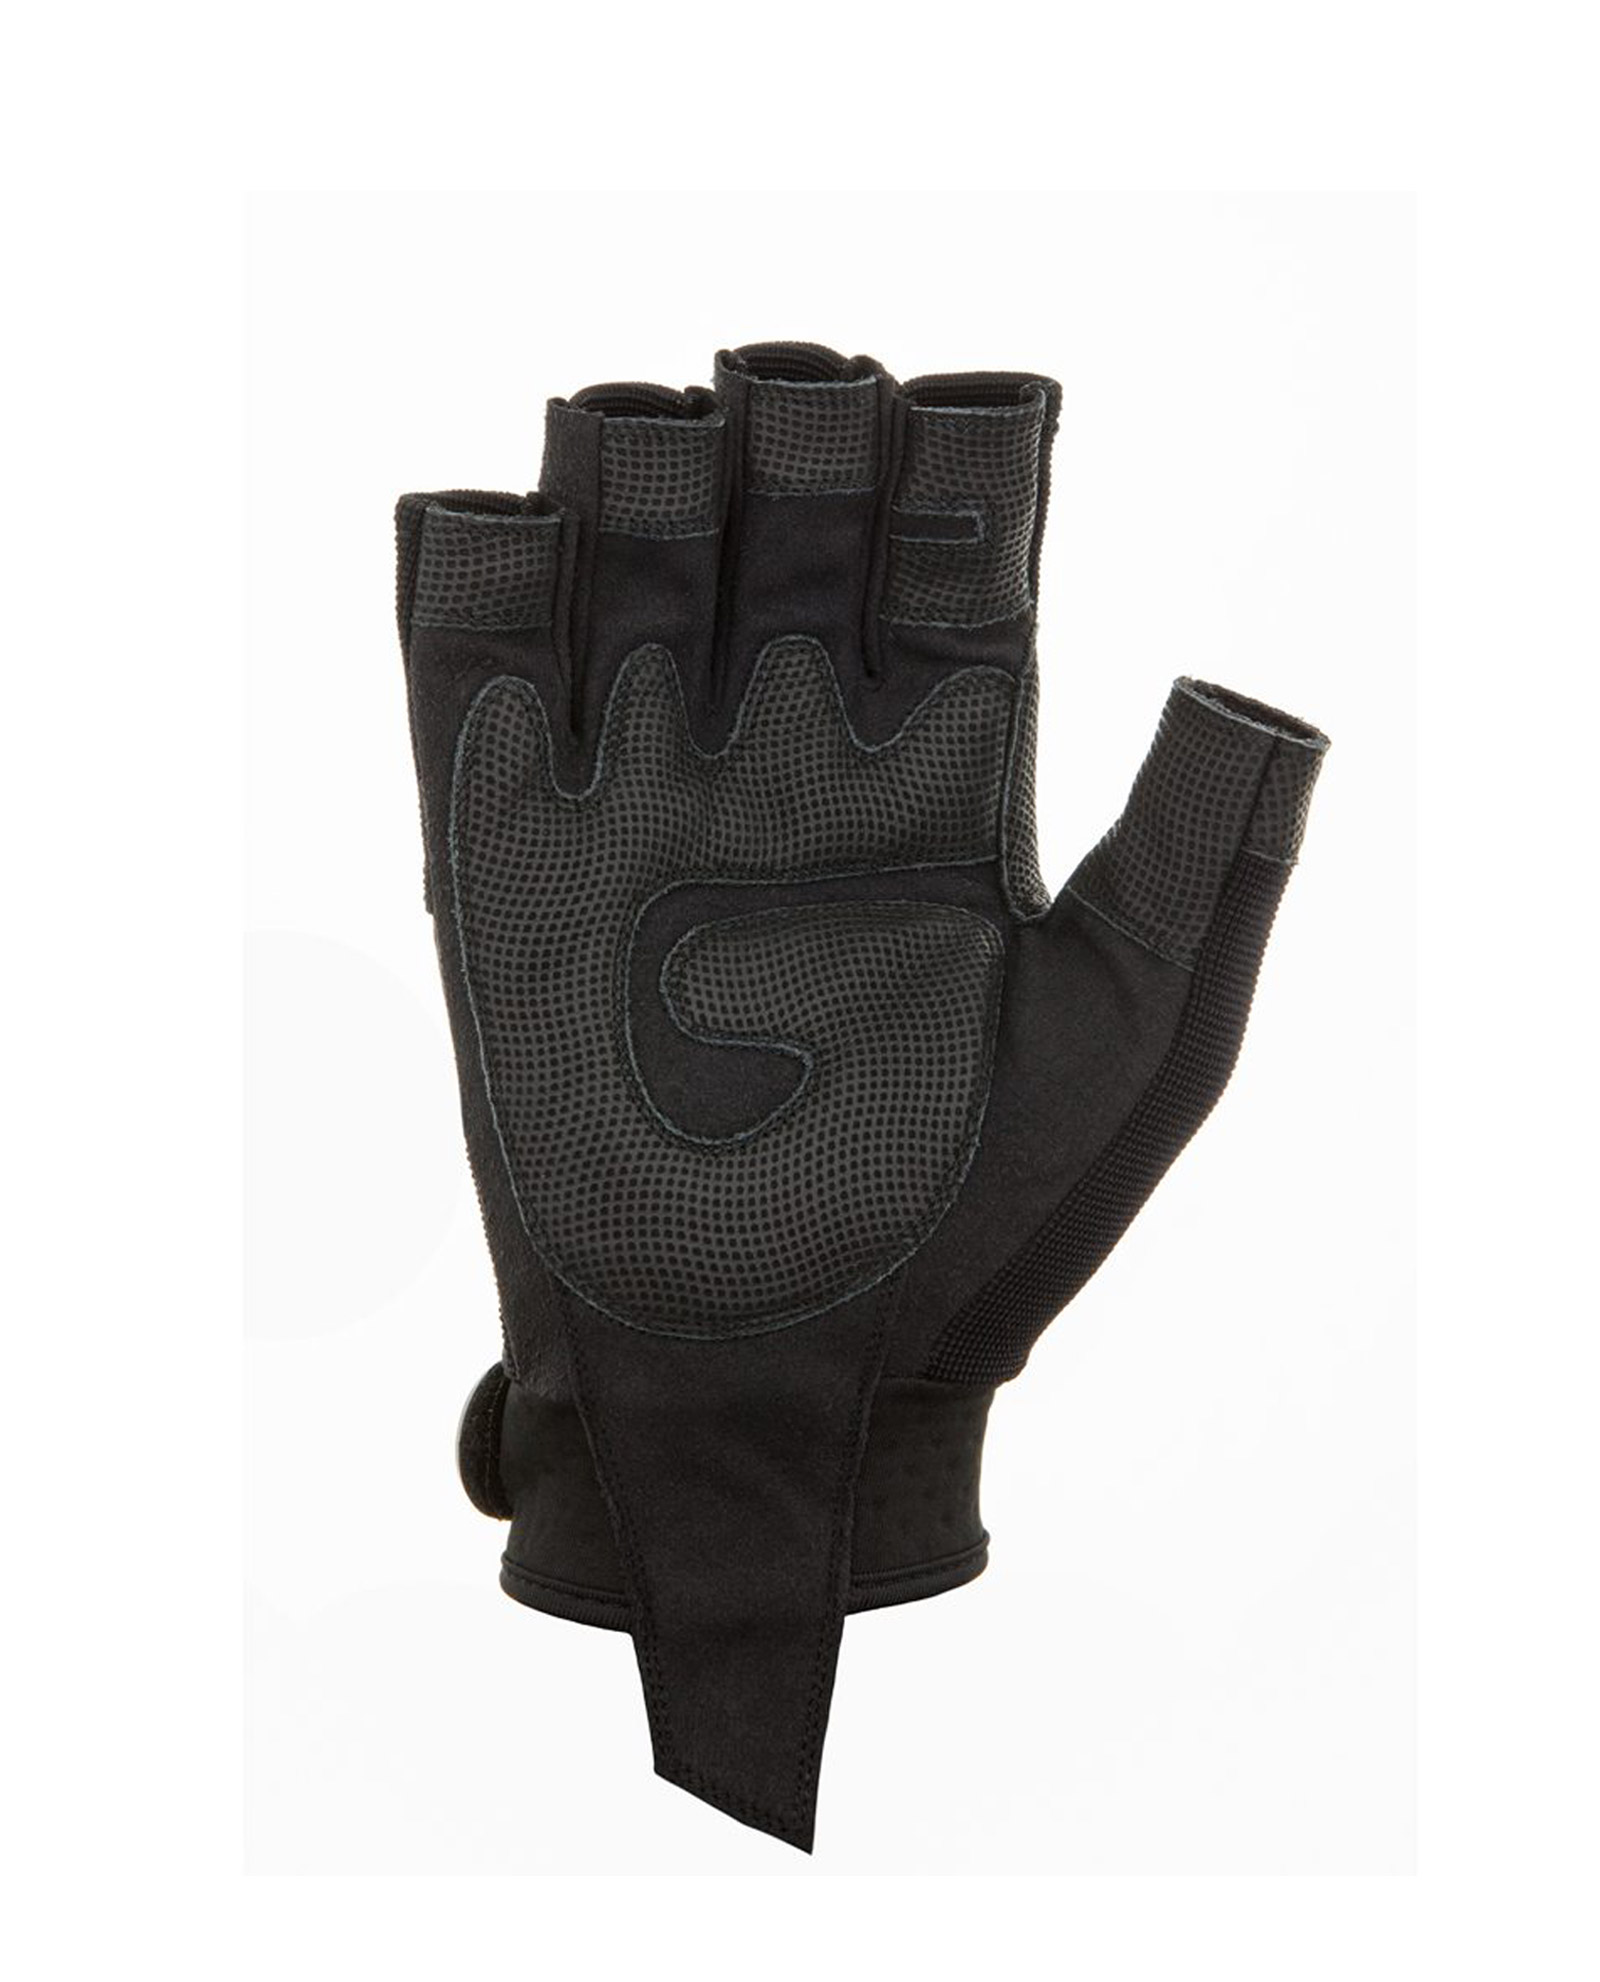 Dirty Rigger Glove DTY-SLIMFLS SlimFit Rigger Glove Fingerless ...